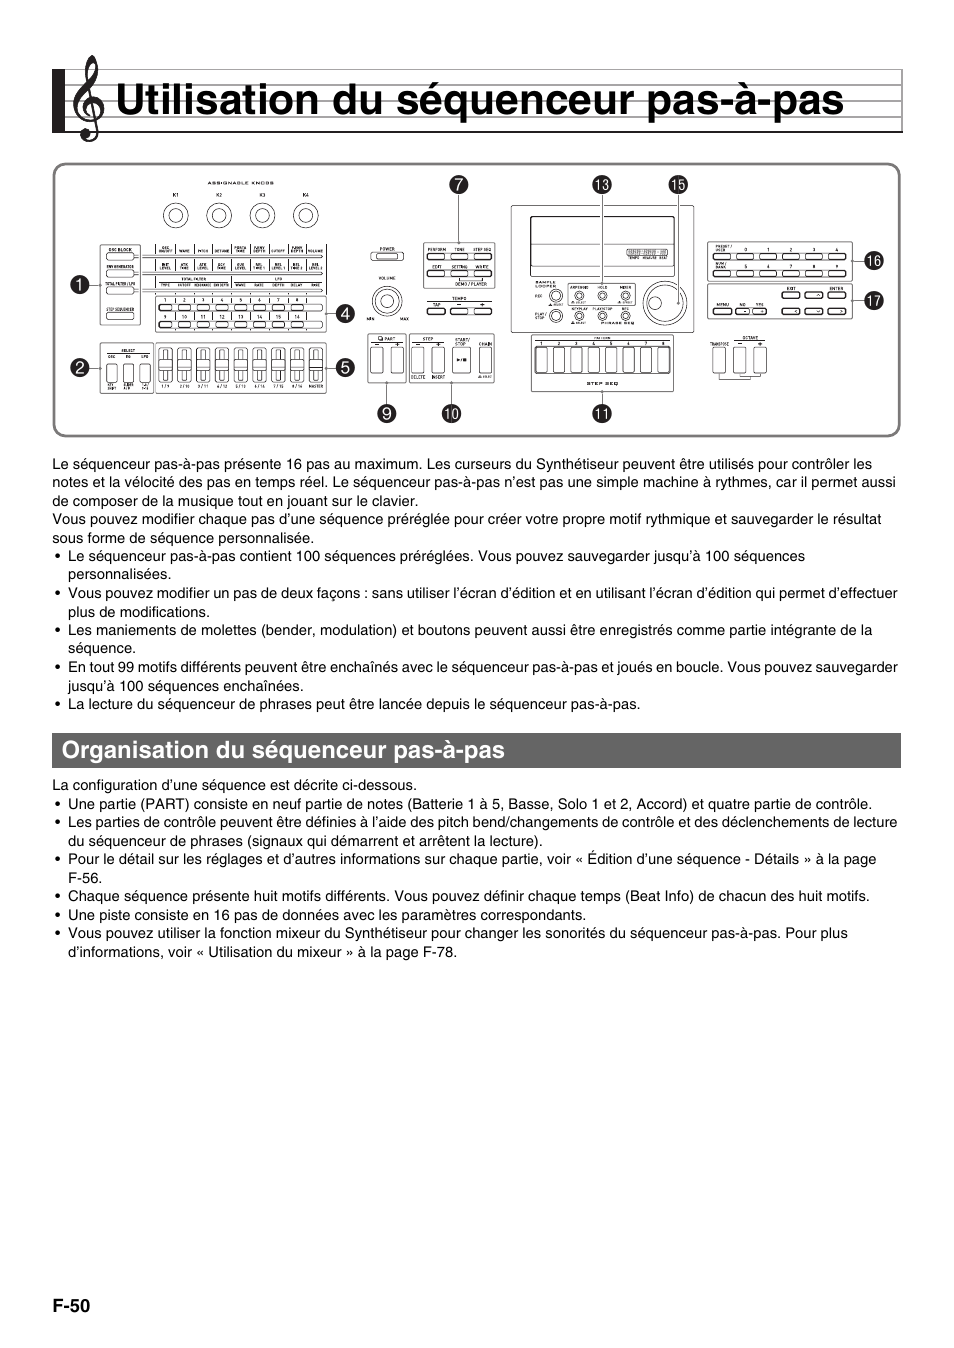 Utilisation du séquenceur pas-à-pas, Organisation du séquenceur pas-à-pas | Casio XW-G1 Manuel d'utilisation | Page 51 / 107